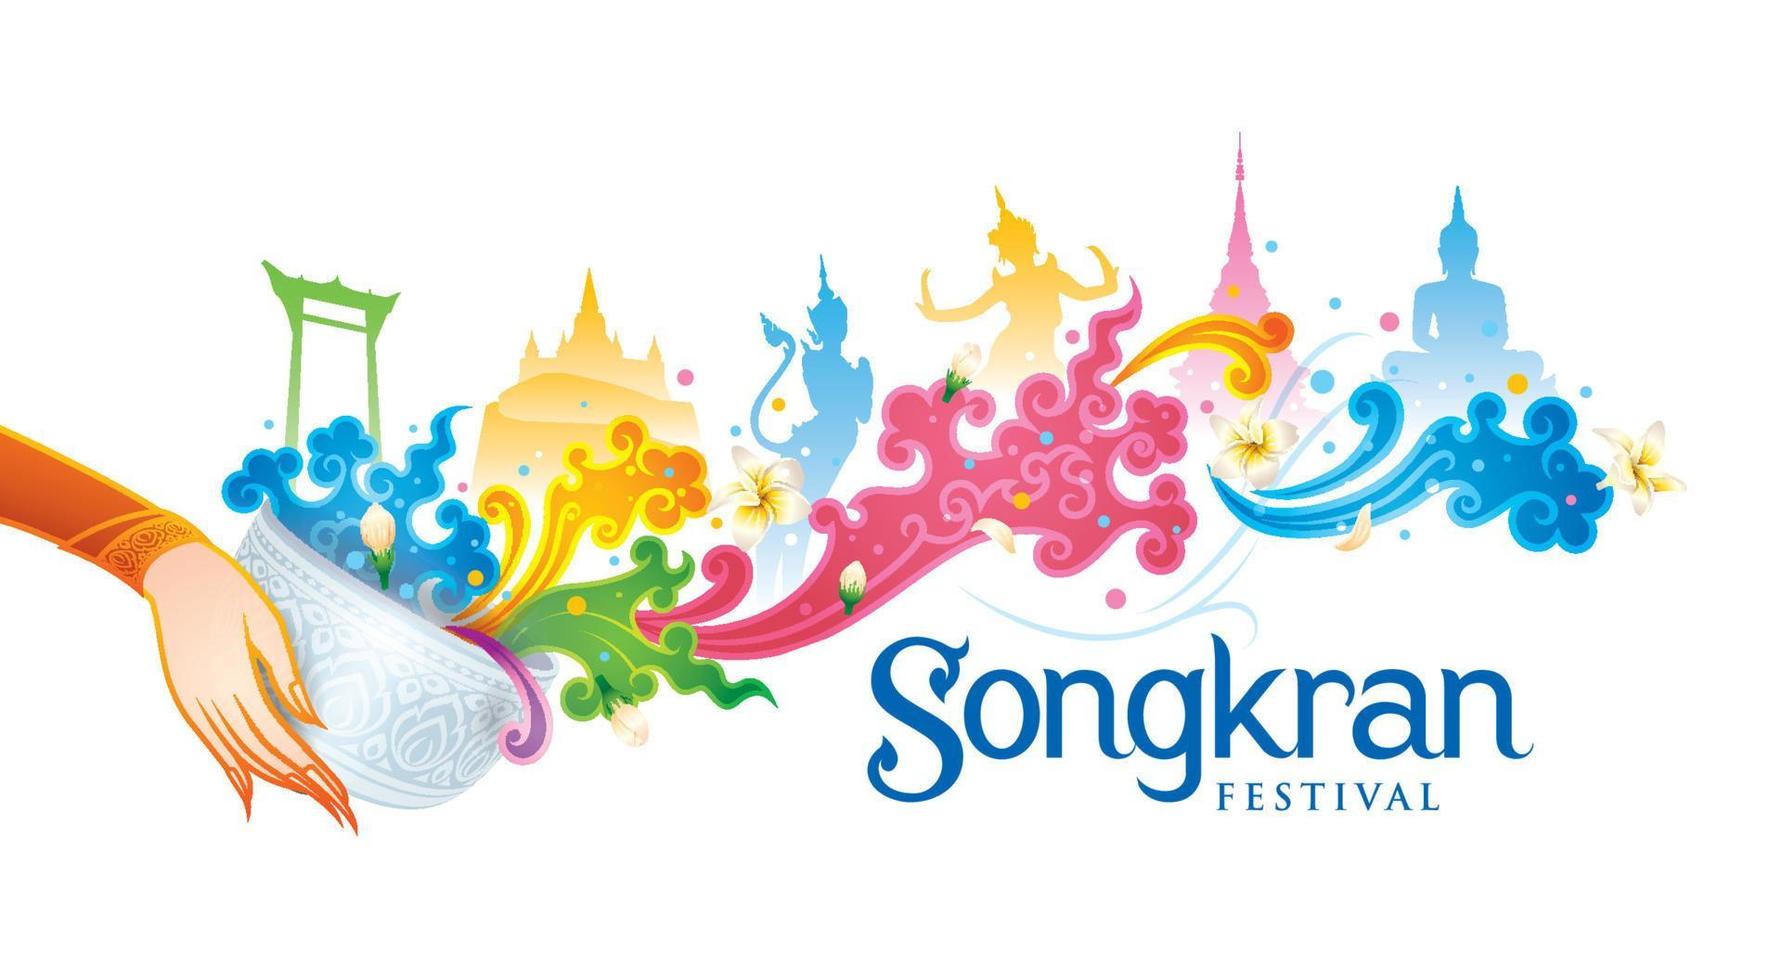 éclaboussure d'eau thaïlandaise colorée, festival de songkran en thaïlande vecteur, traditionnel thaïlandais vecteur